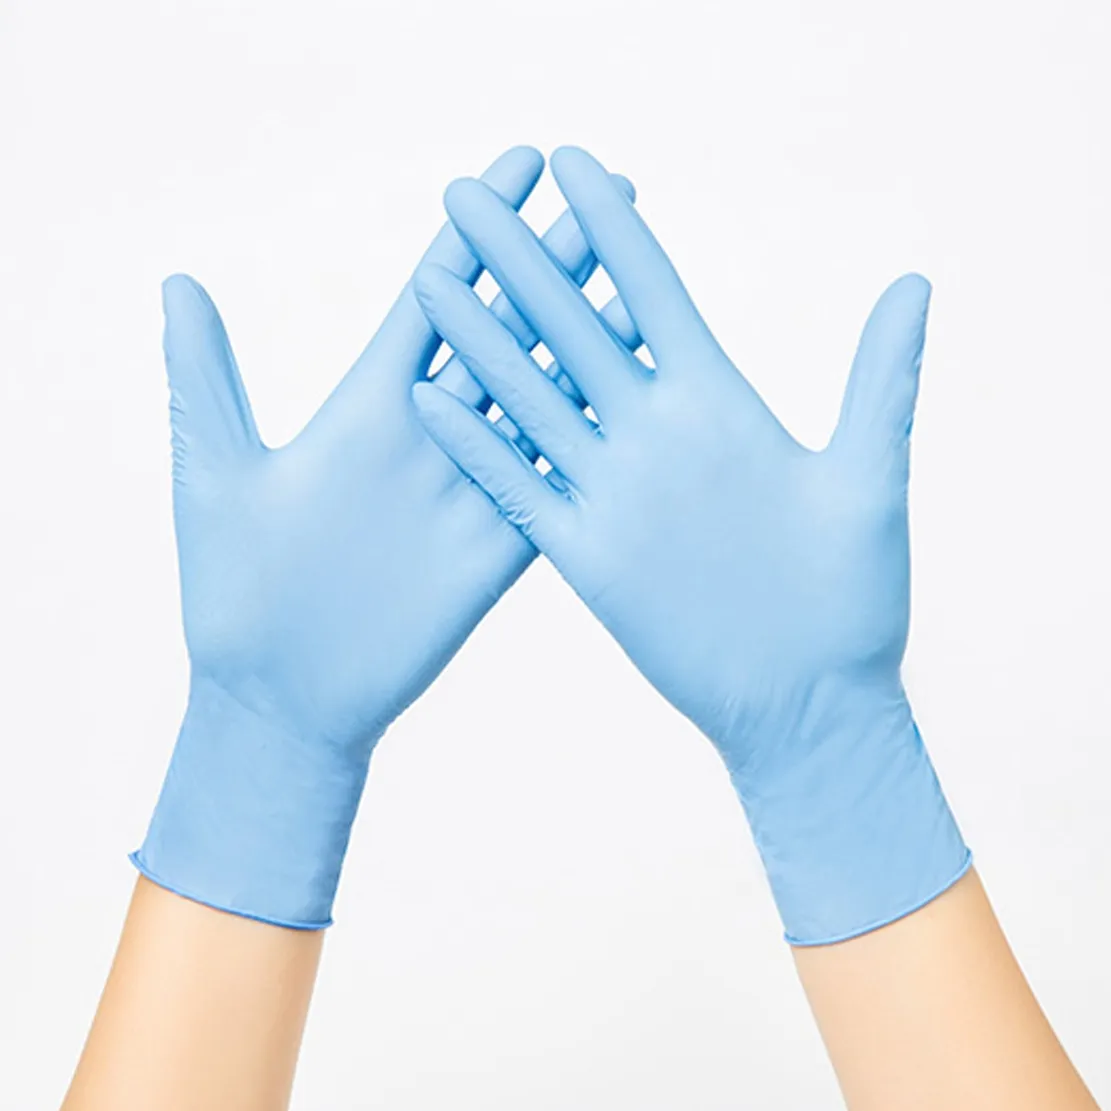 AJ MED GROUP ถุงมือผ่าตัดทางการแพทย์แบบใช้แล้วทิ้ง,ถุงมือไนไตรล์ปลอดเชื้อ